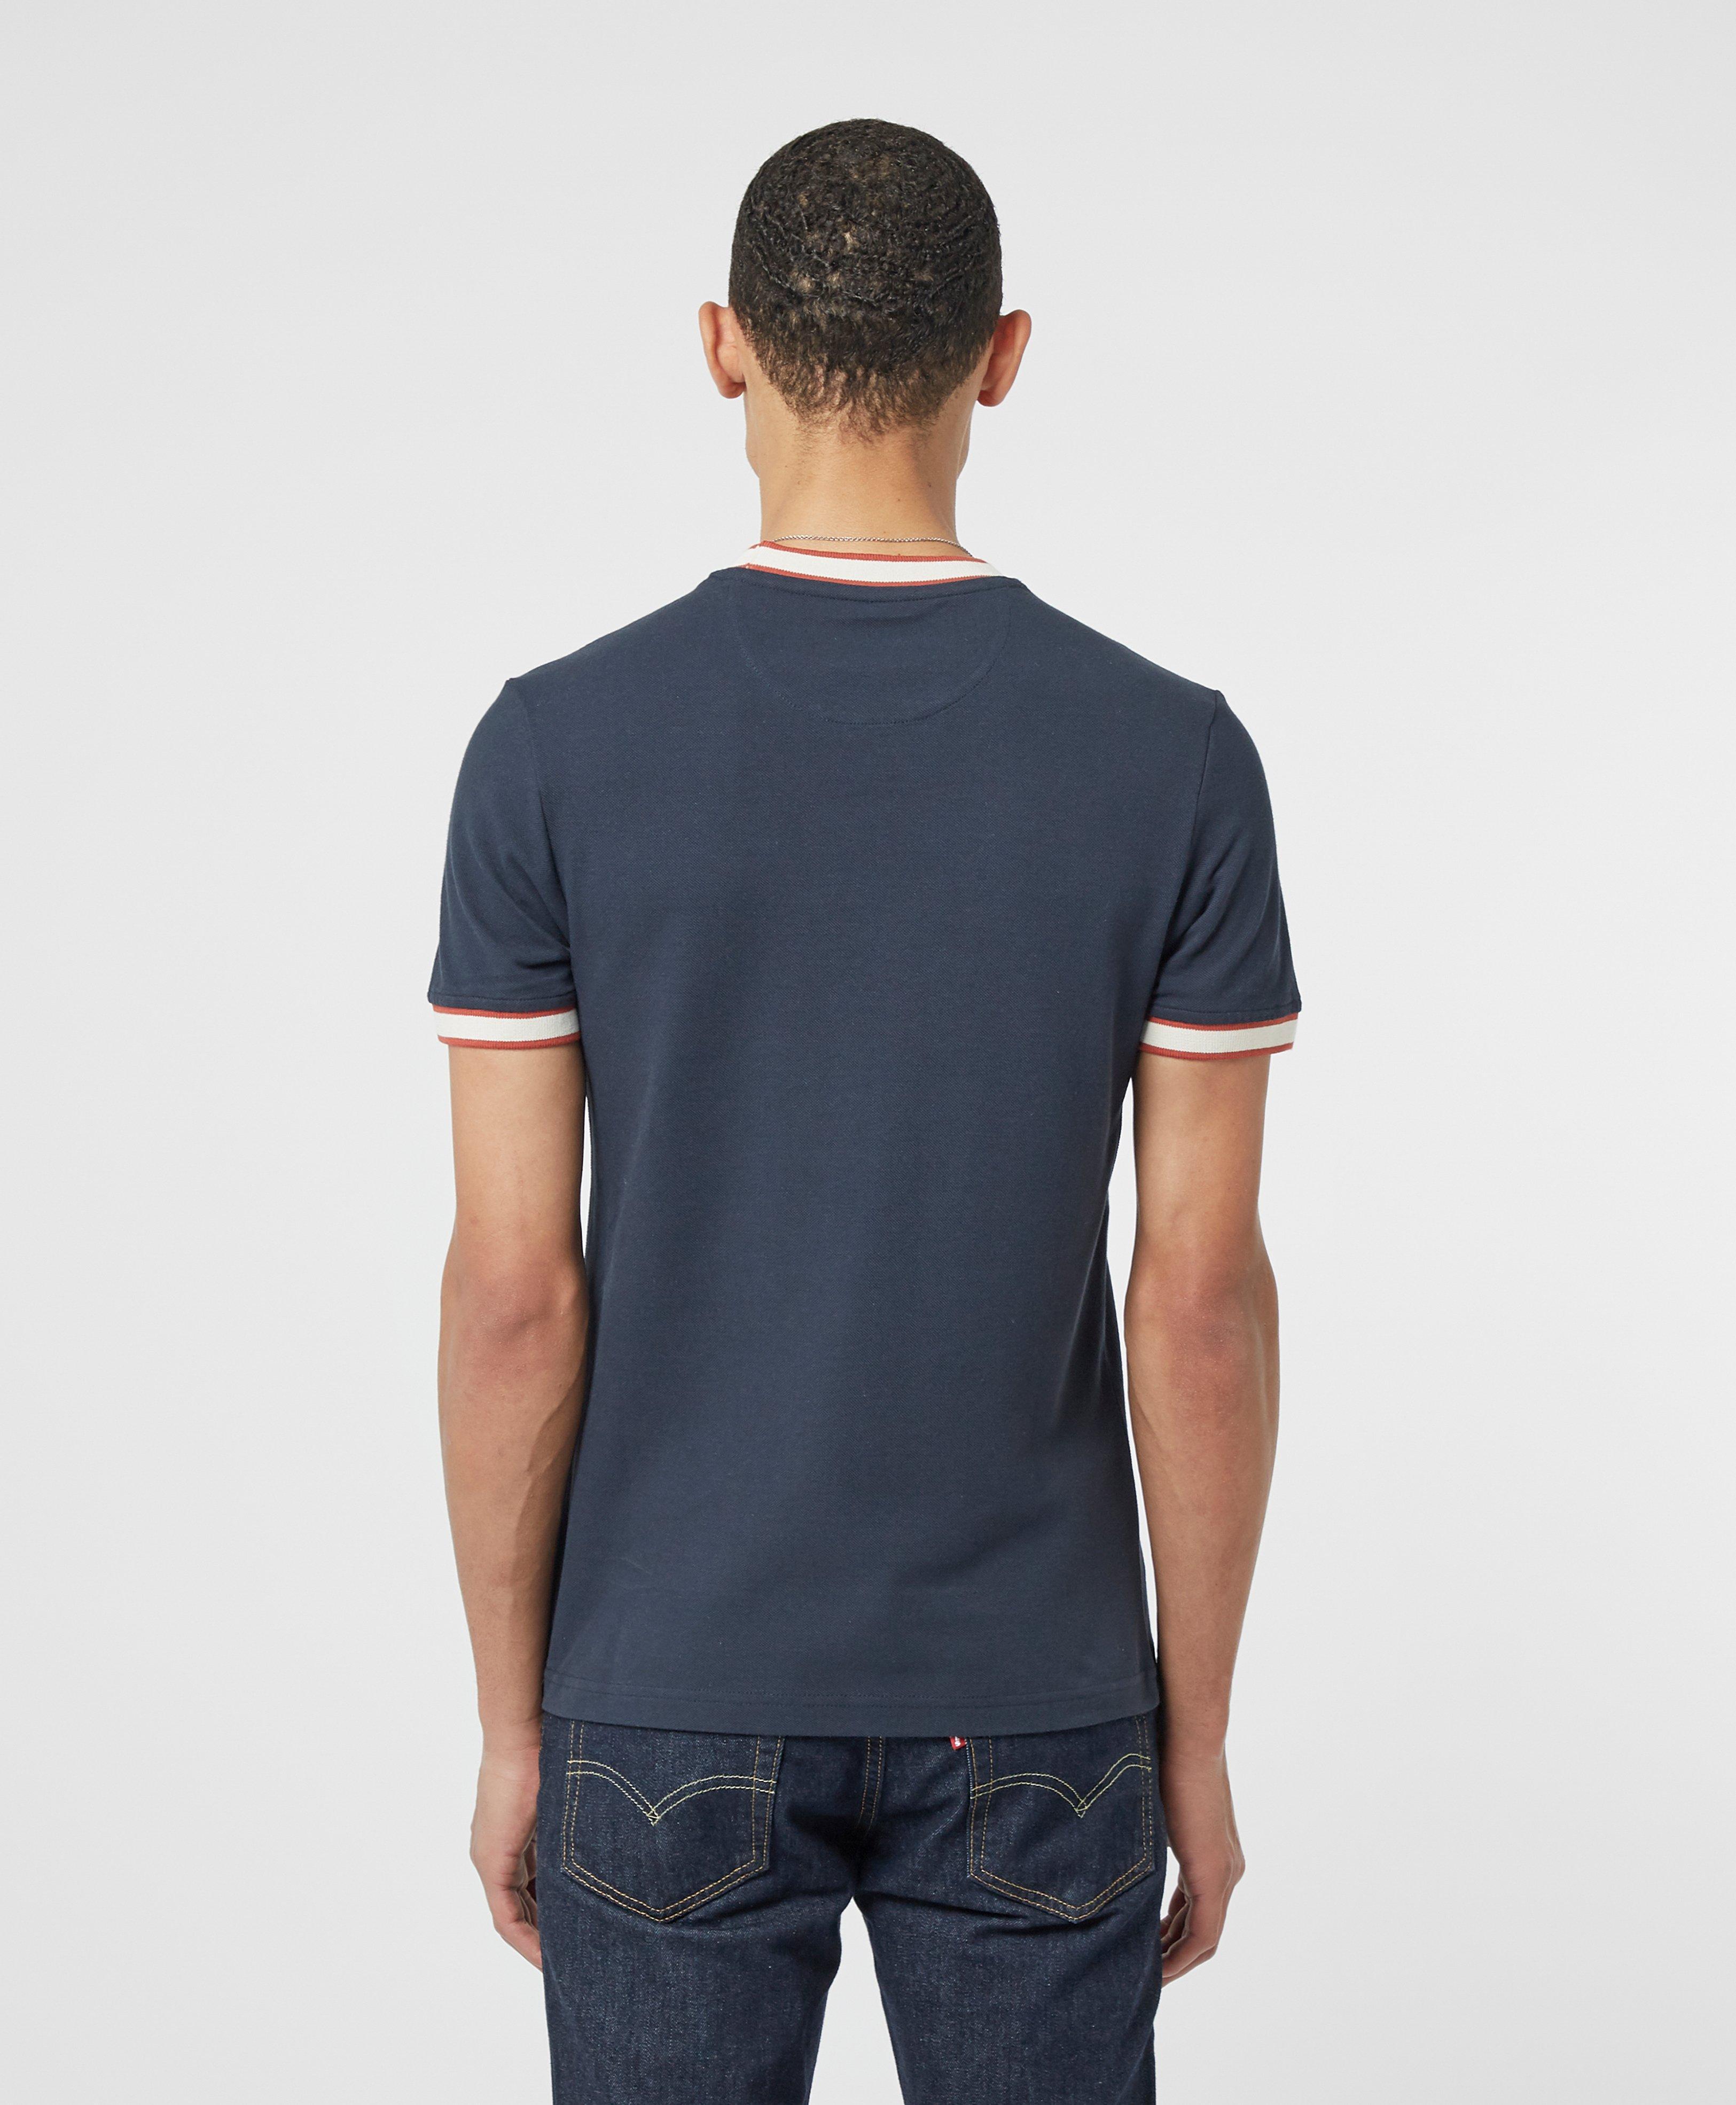 Farah Birmingham Ringer Short Sleeve T-shirt in Blue for Men - Lyst